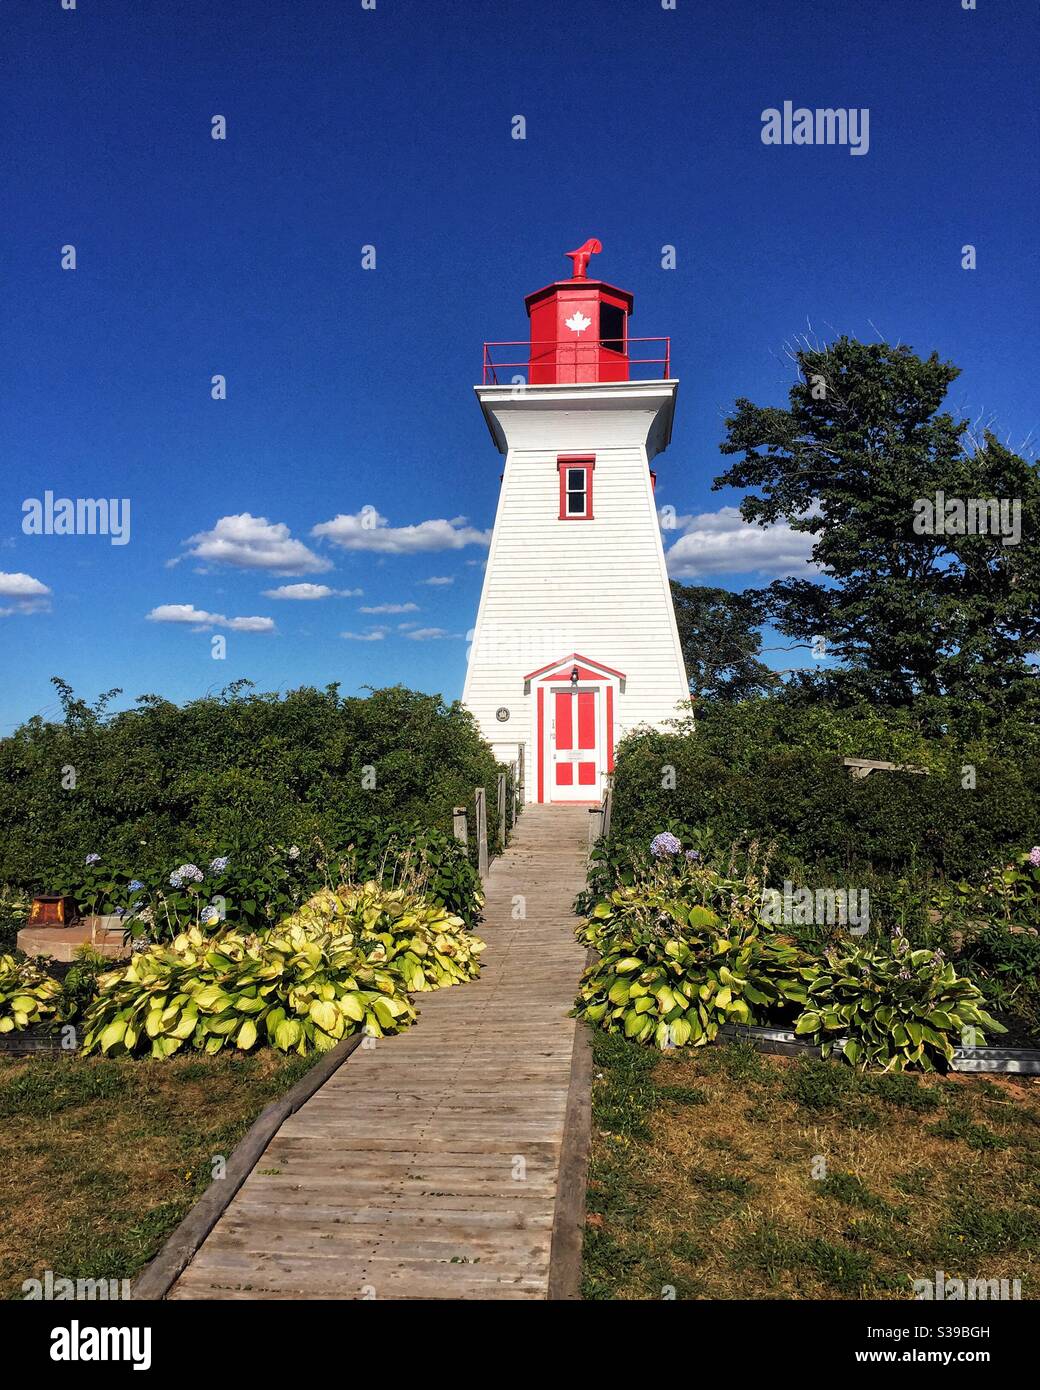 Victoria près du phare de la mer, Île-du-Prince-Édouard, Canada. Banque D'Images